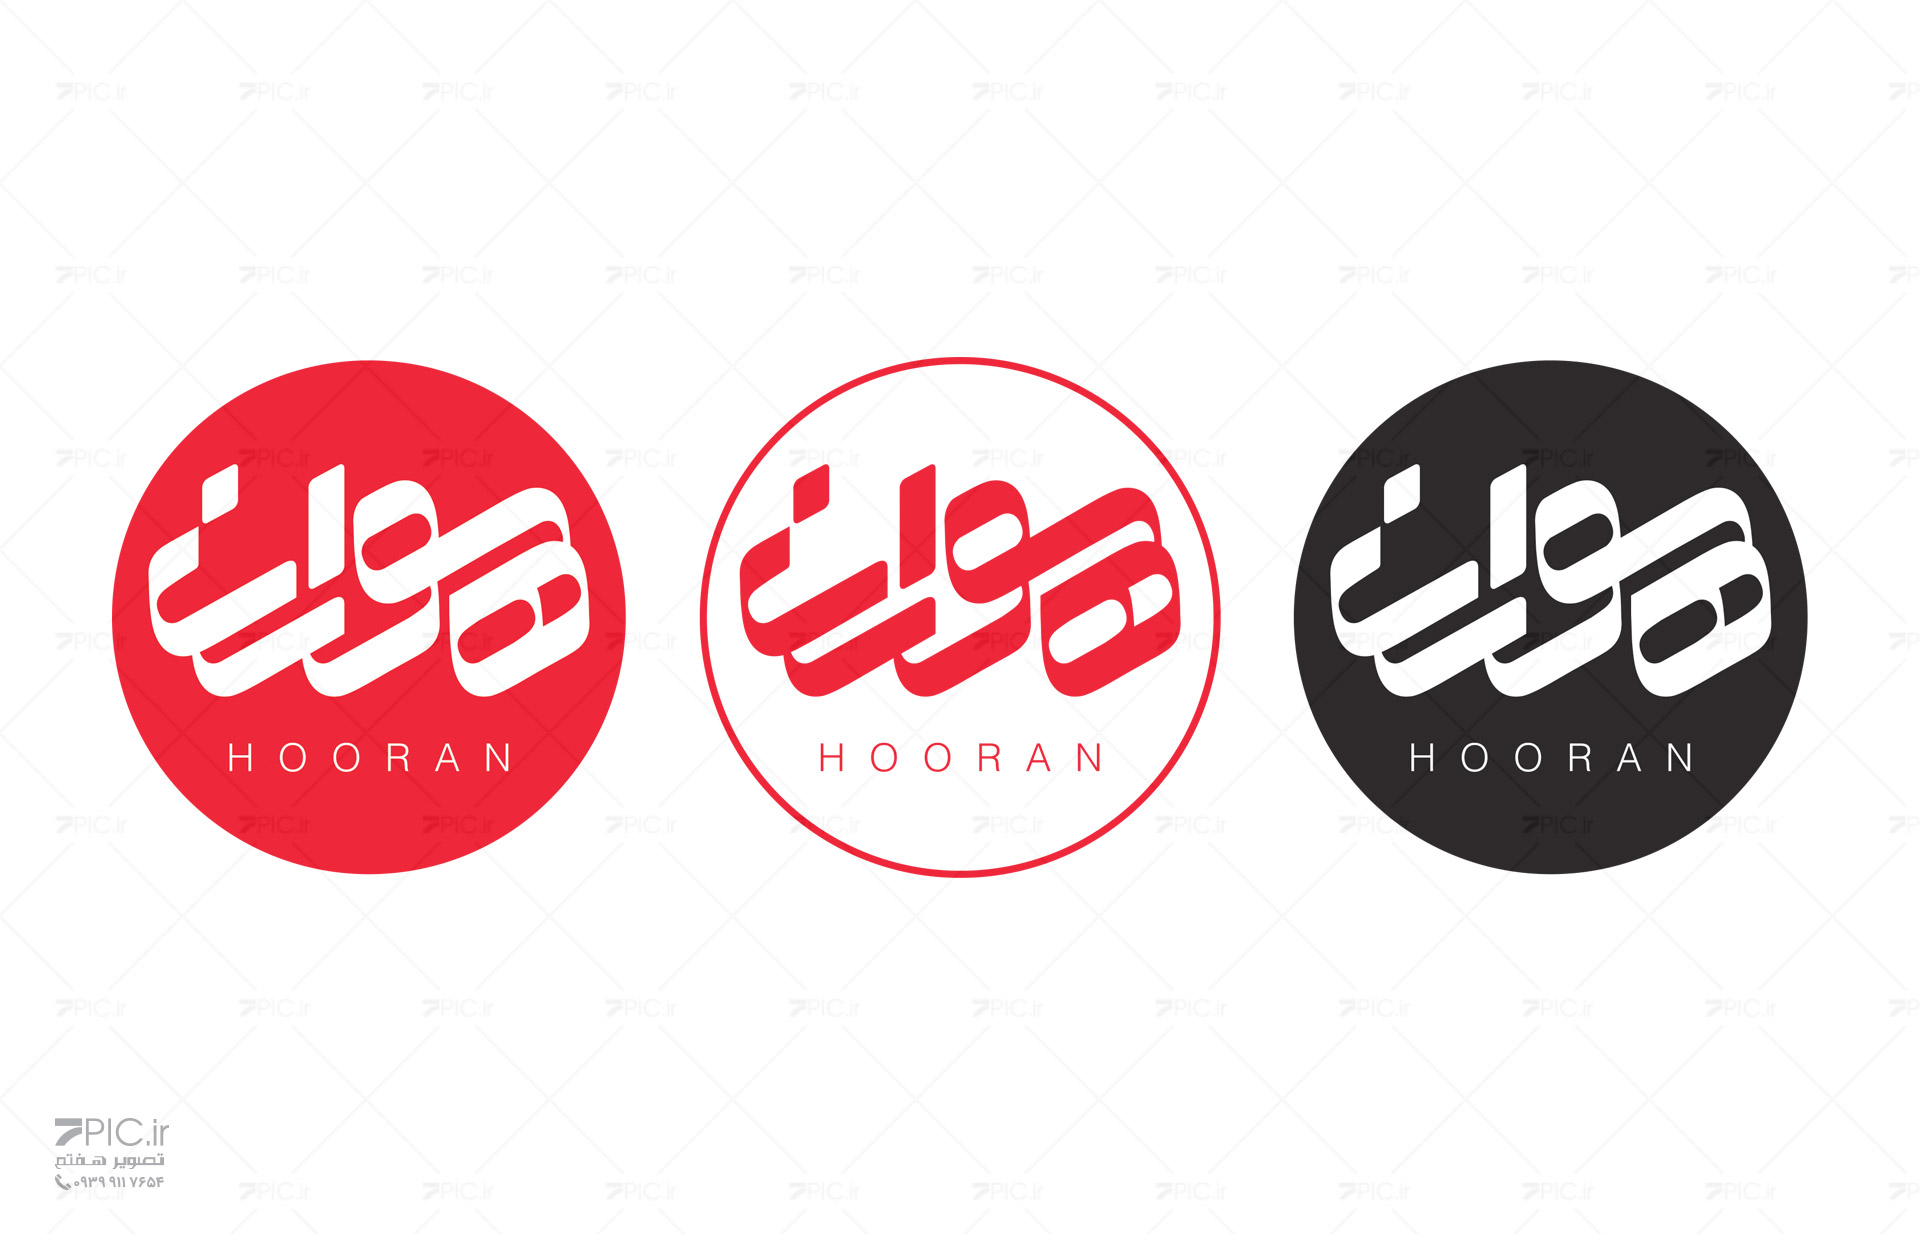 طراحی لوگو گروه هوران (Hooran)، استودیو تصویر هفتم مشهد